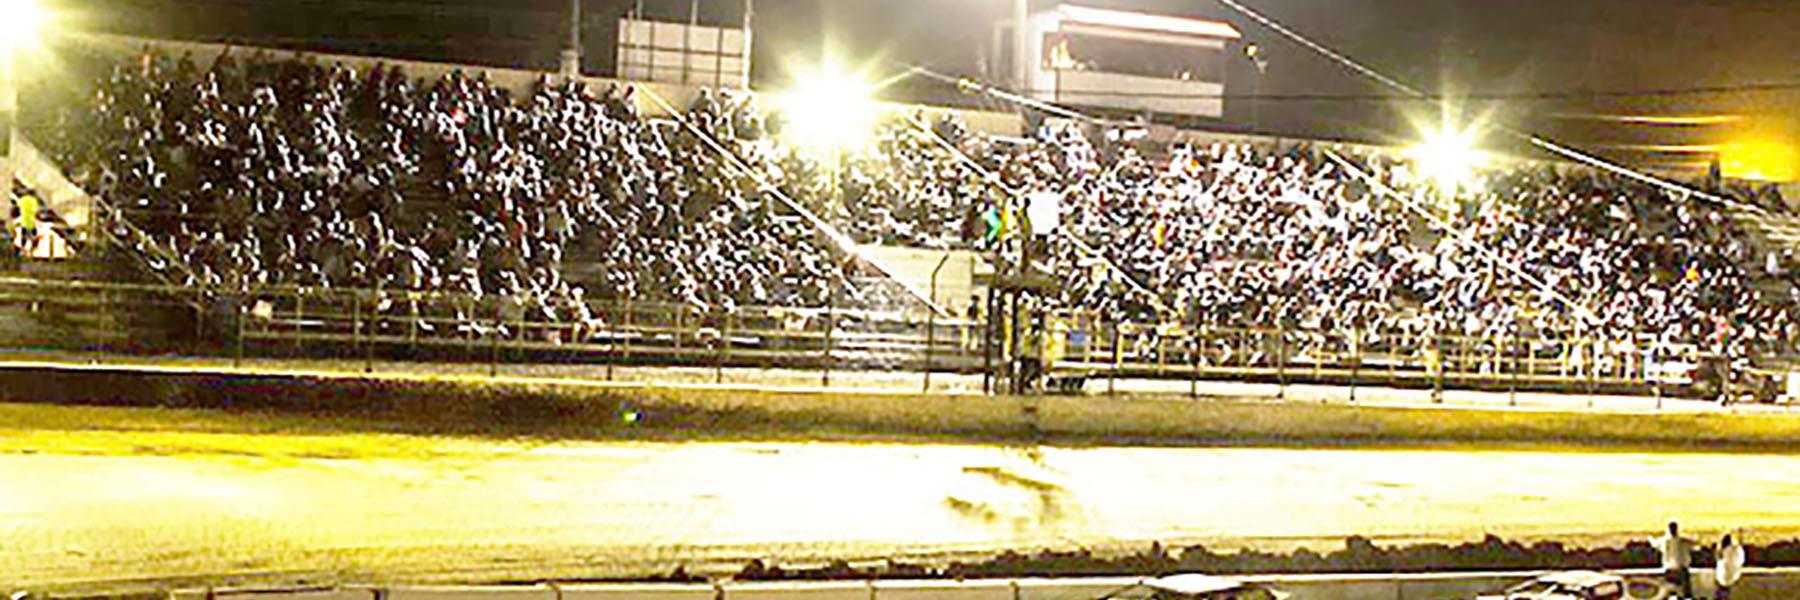 10/1/2022 - Tri-State Speedway